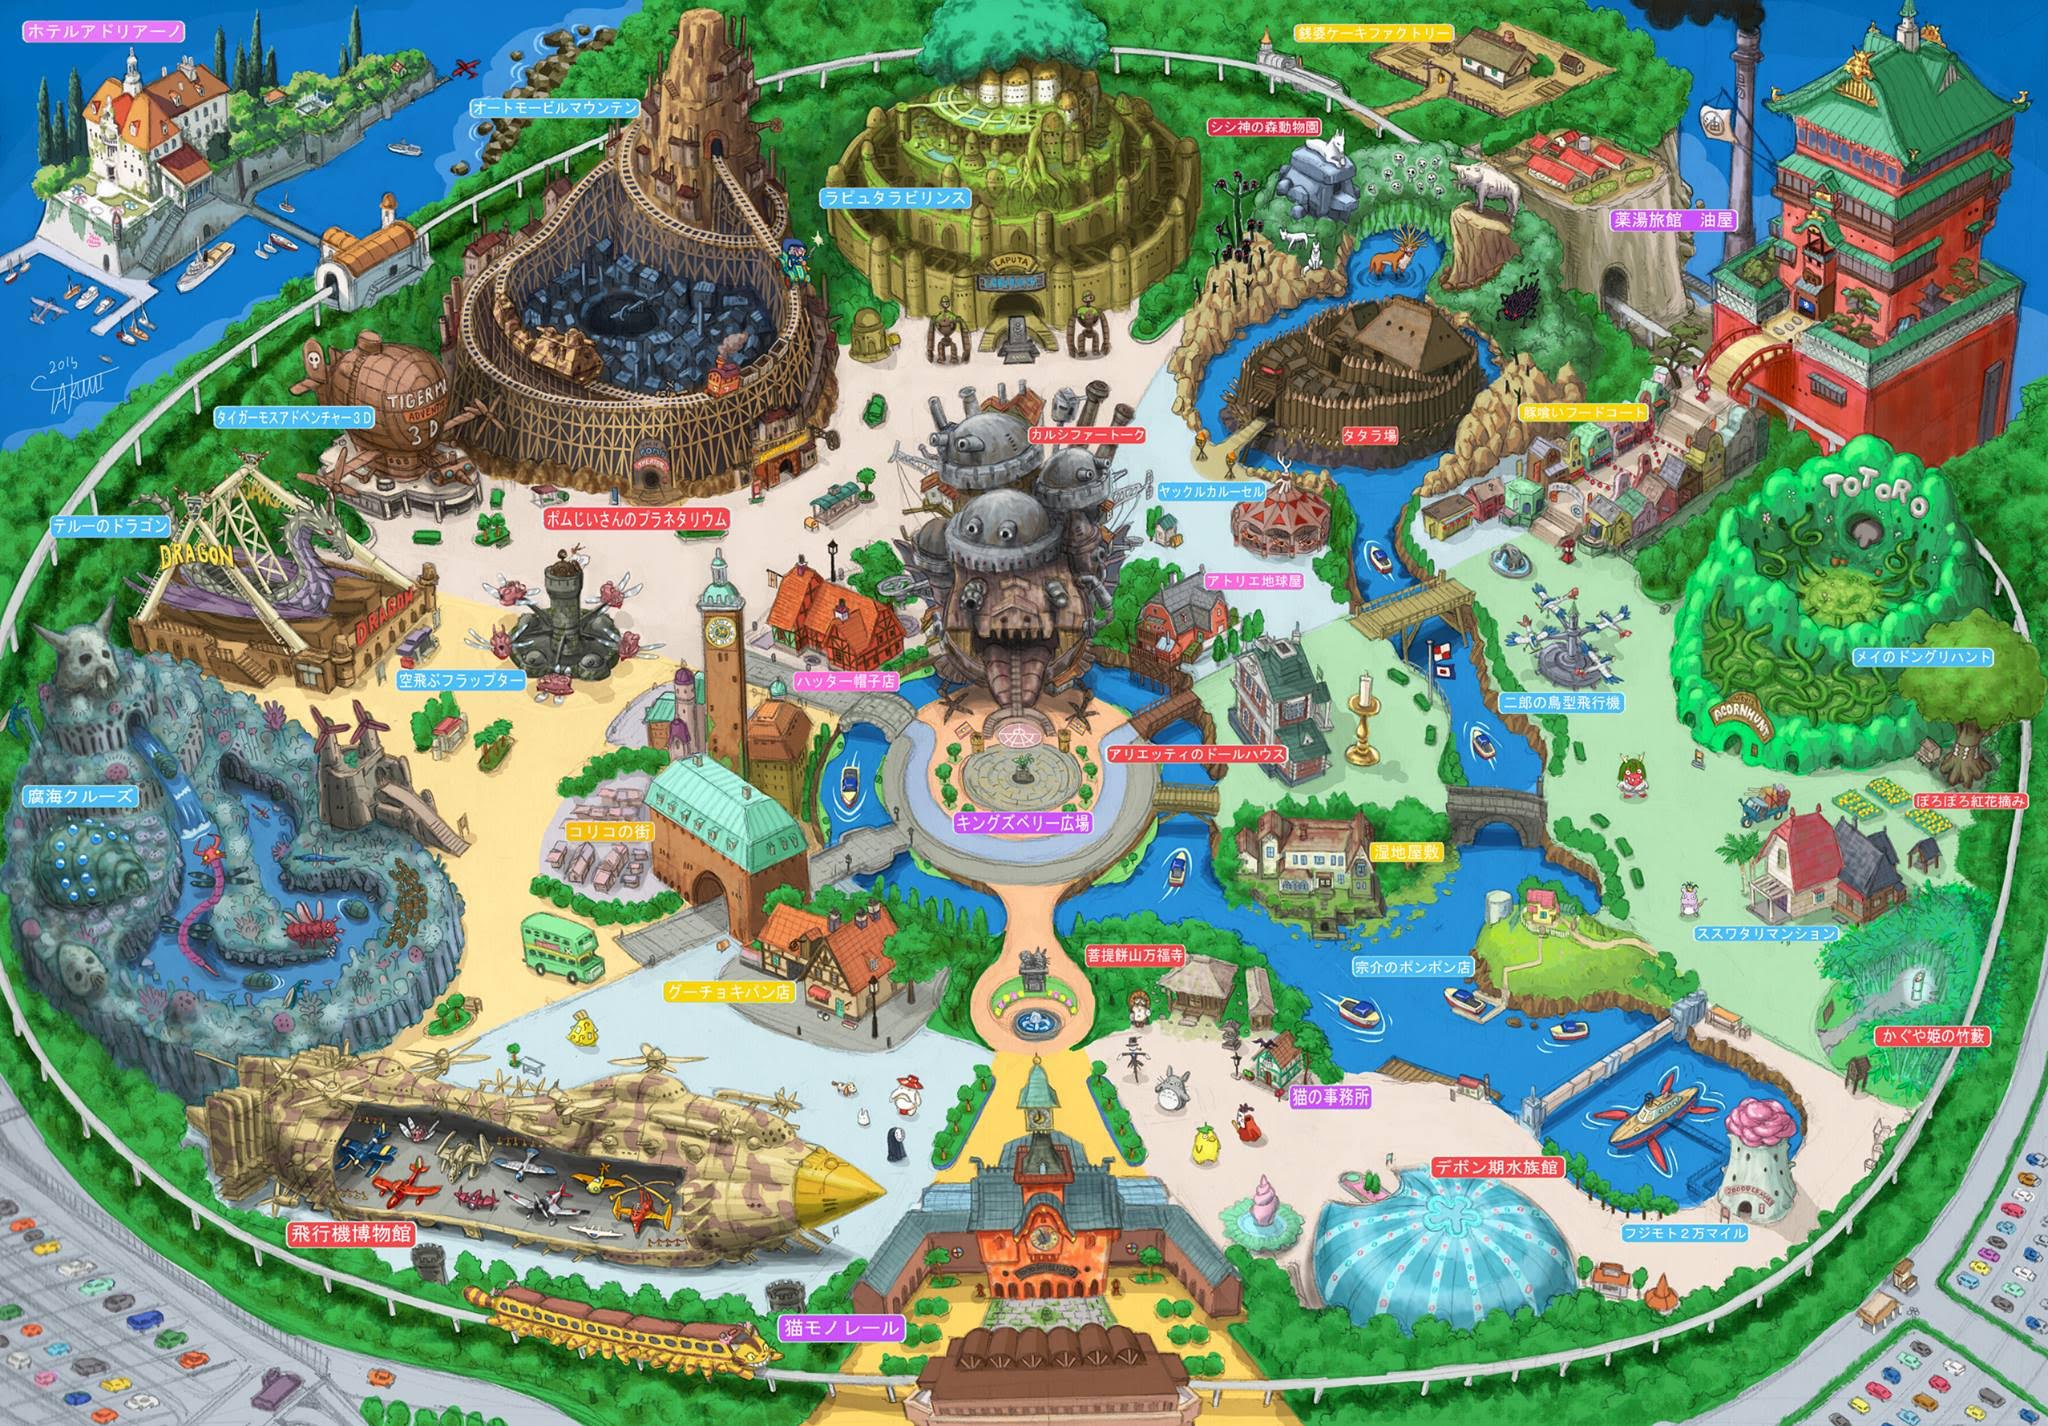 吉卜力動畫將打造最夢幻主題樂園「對抗迪士尼樂園」，粉絲瘋狂尖叫「不去對不起自己」！